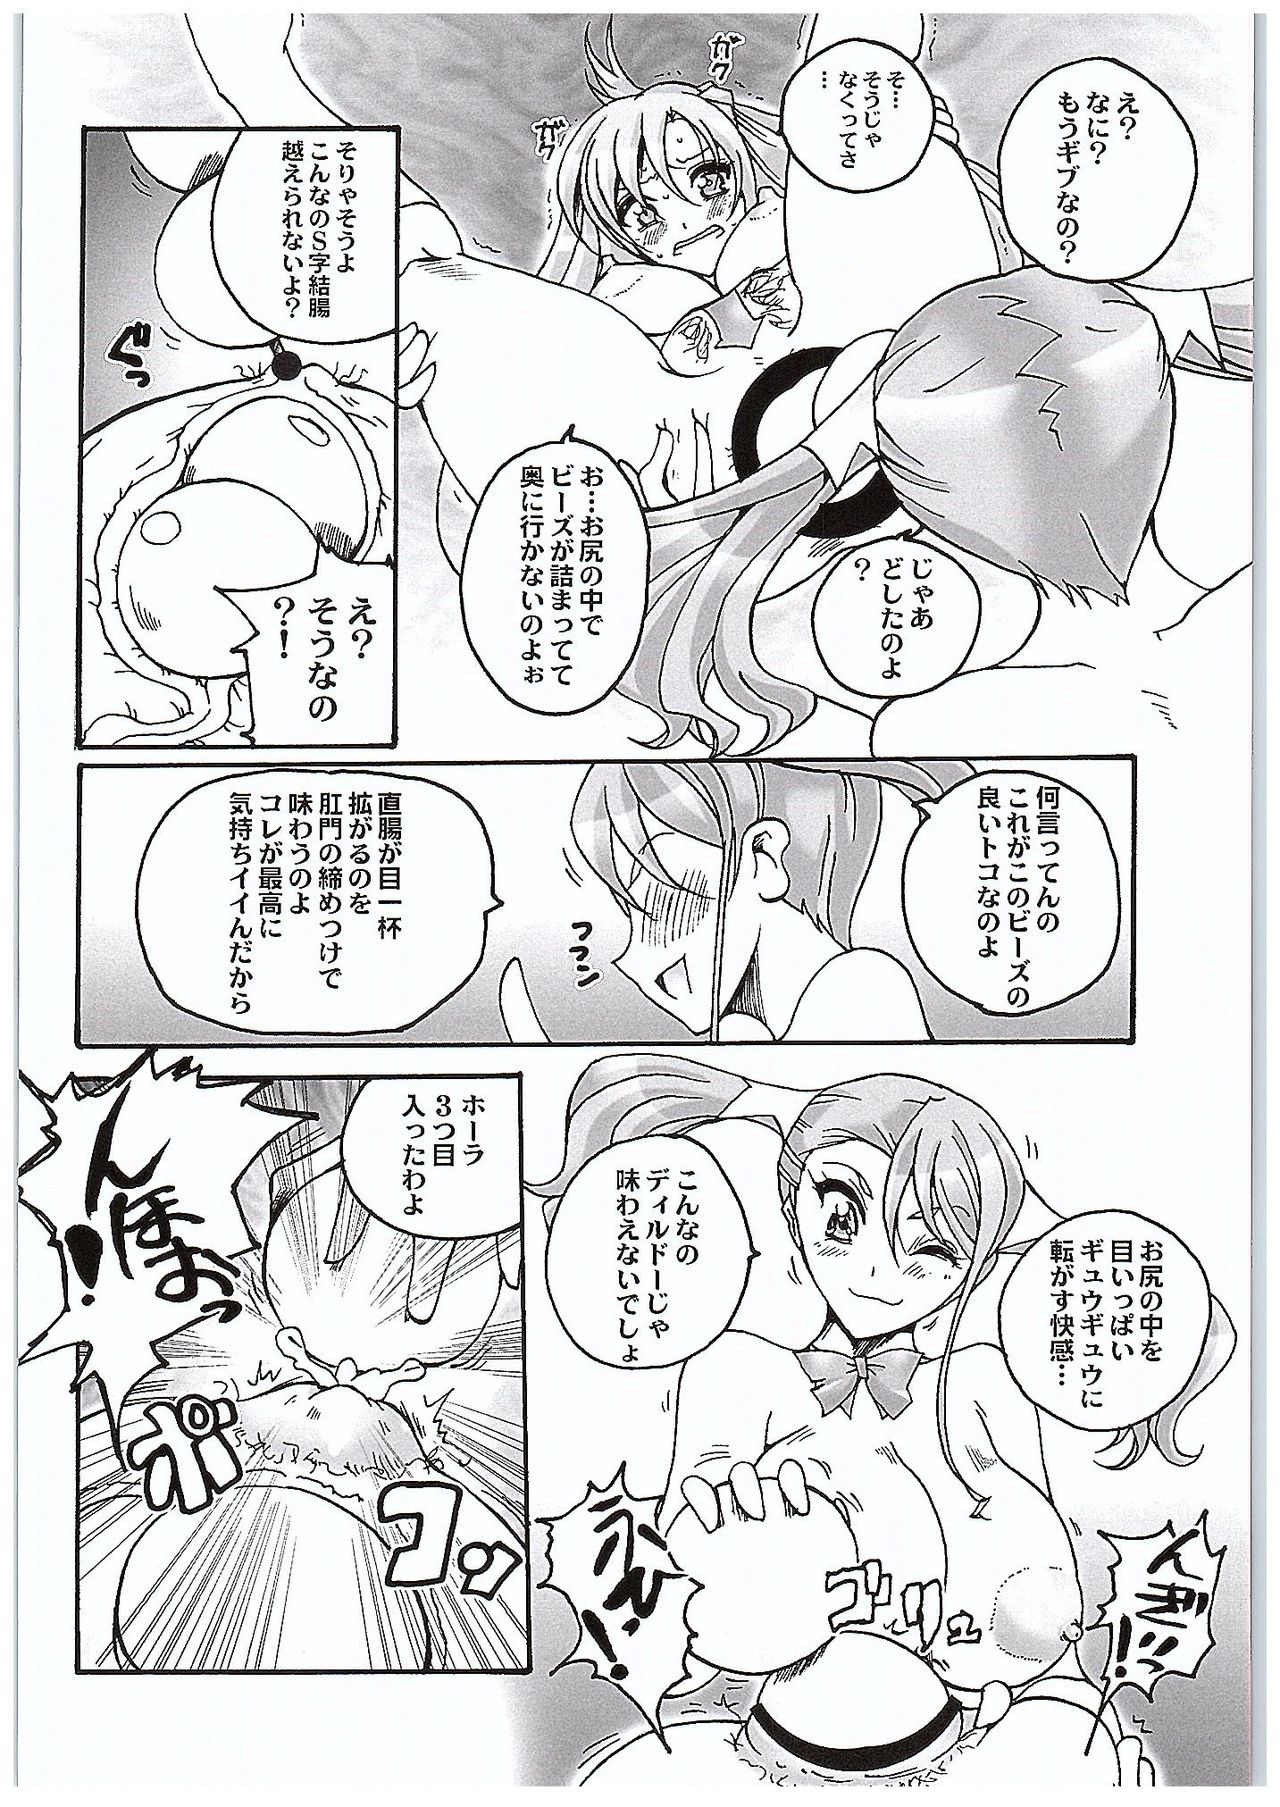 (COMIC1☆10) [山櫻 (井口たかじん)] 安城さんと結城さん ラブLOVEエネマファイト (ソードアート・オンライン、 あの日見た花の名前を僕達はまだ知らない。)